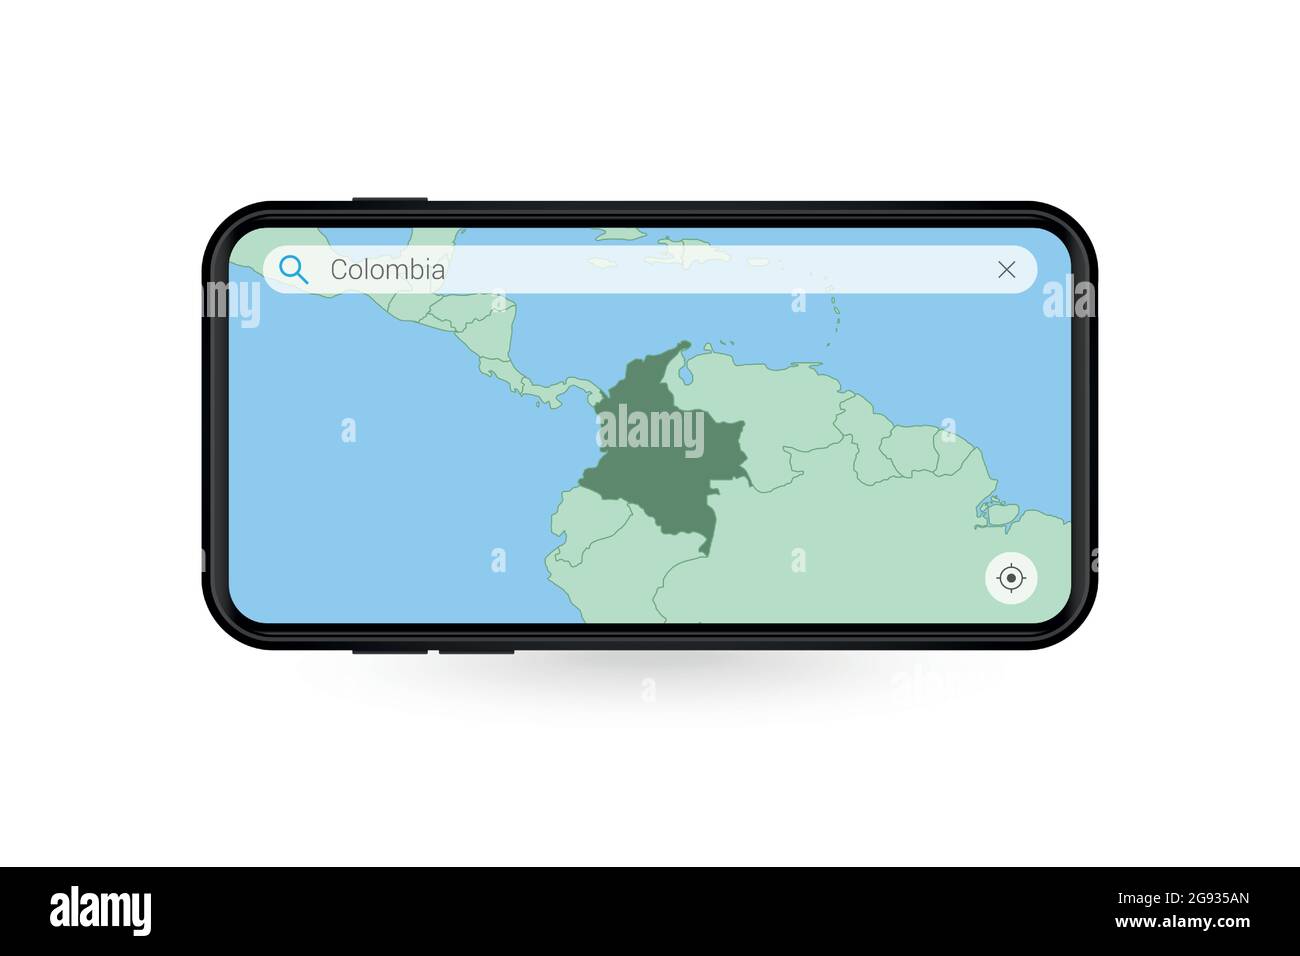 Recherche sur la carte de Colombie dans l'application de cartographie pour smartphone. Carte de Colombie dans téléphone portable. Illustration vectorielle. Illustration de Vecteur